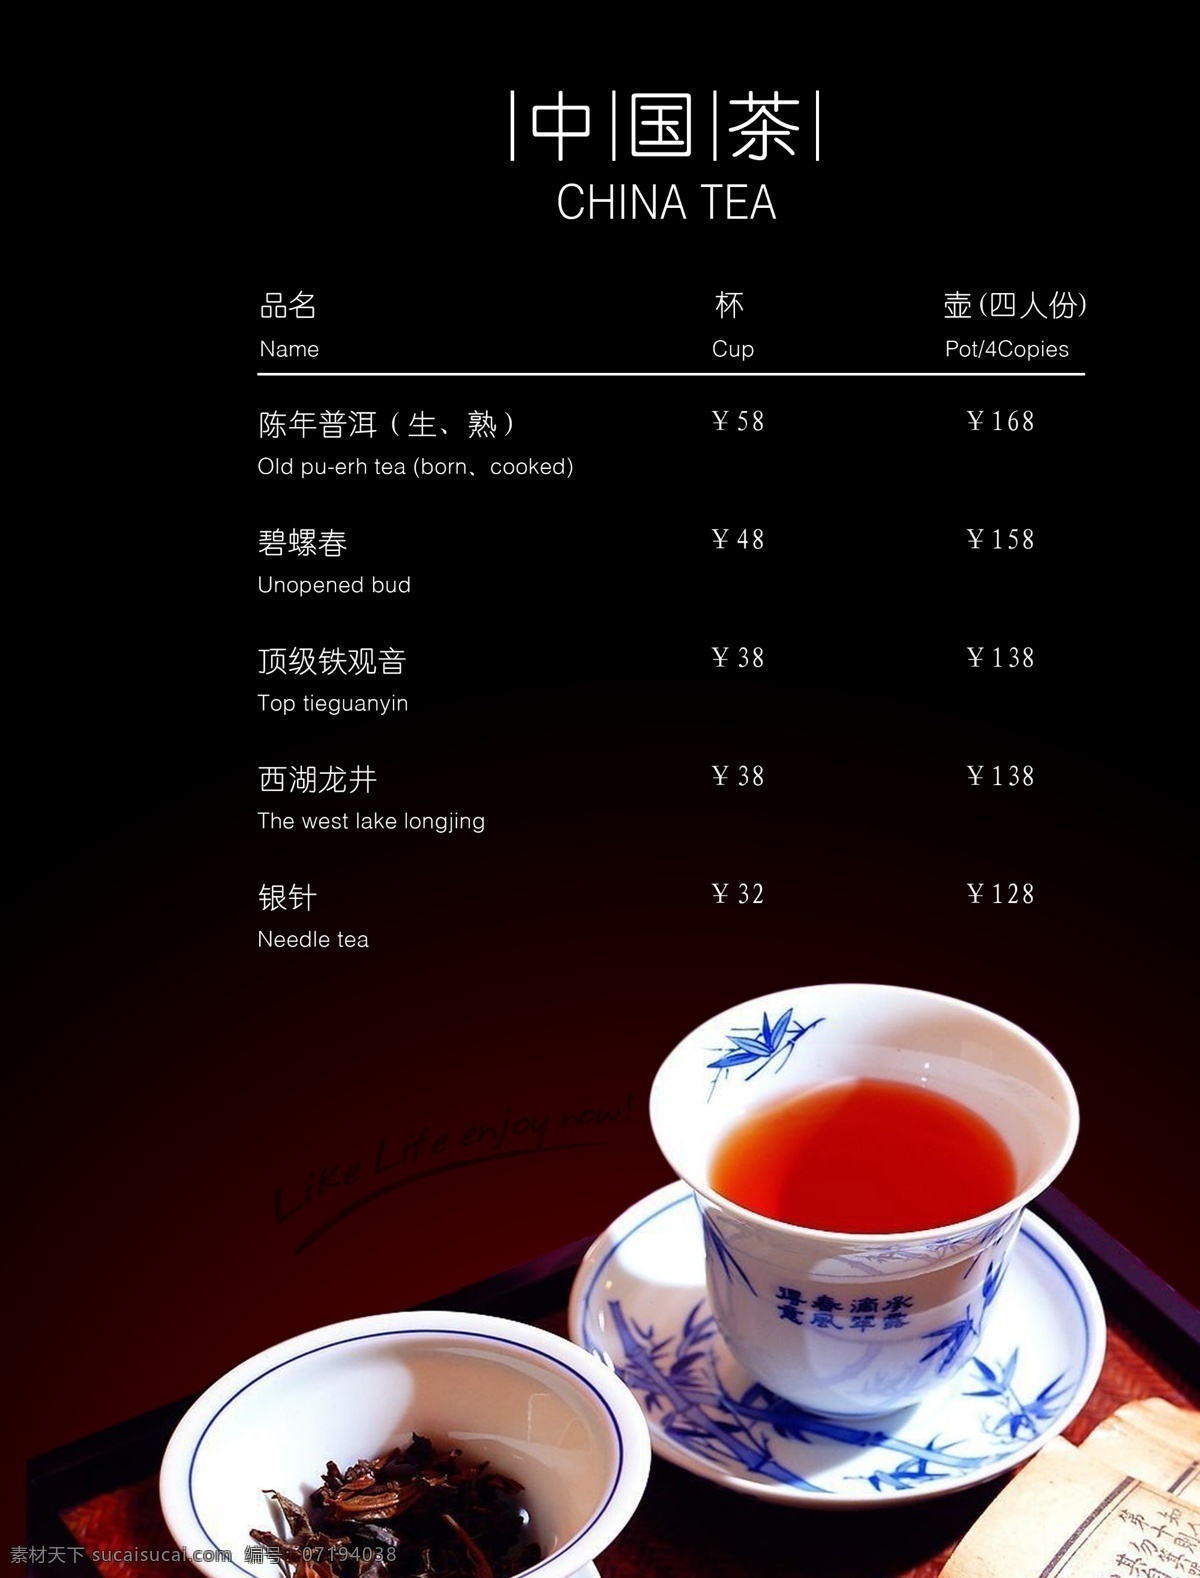 西餐 内页 广告设计模板 红茶 画册设计 源文件 中国茶 西餐内页 其他画册封面